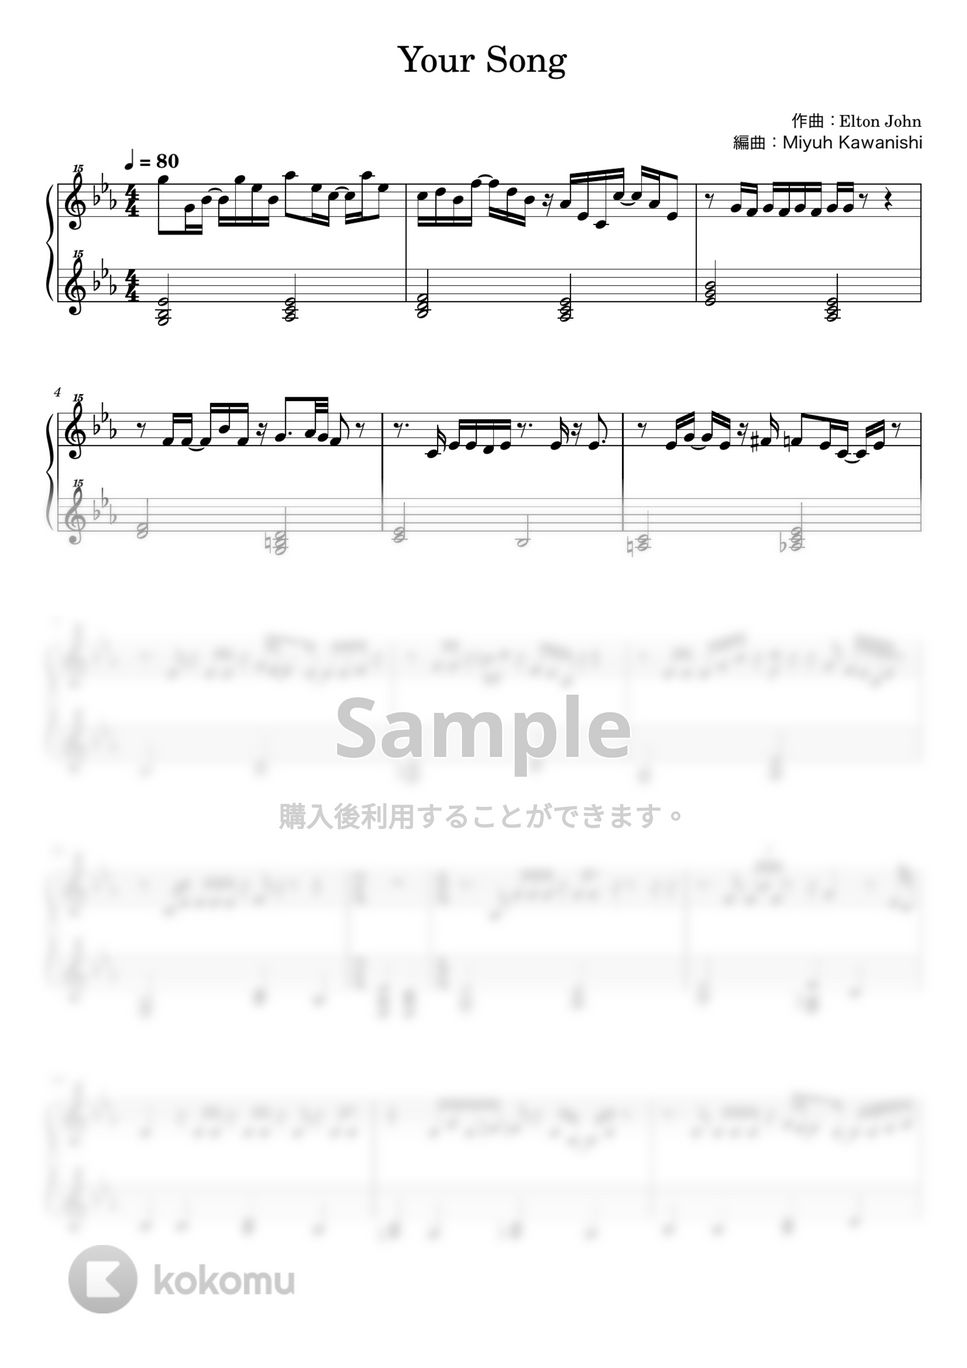 エルトン・ジョン - YOUR SONG (ピアノ / トイピアノ / 32鍵盤) by 川西三裕